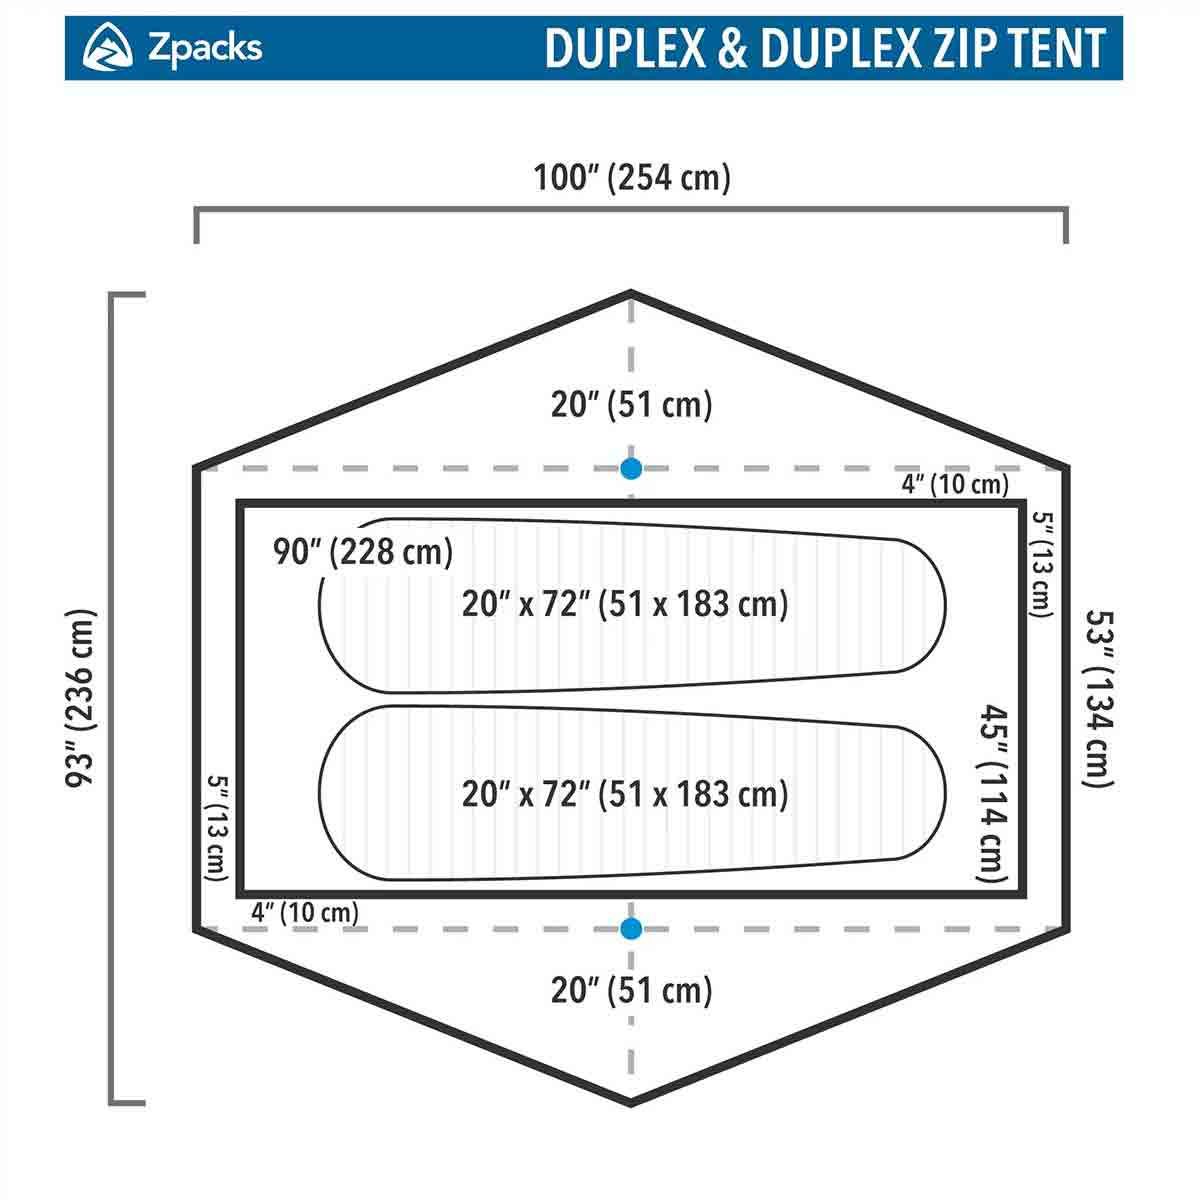 Tienda de campaña Zpacks Duplex Zip - 2 personas